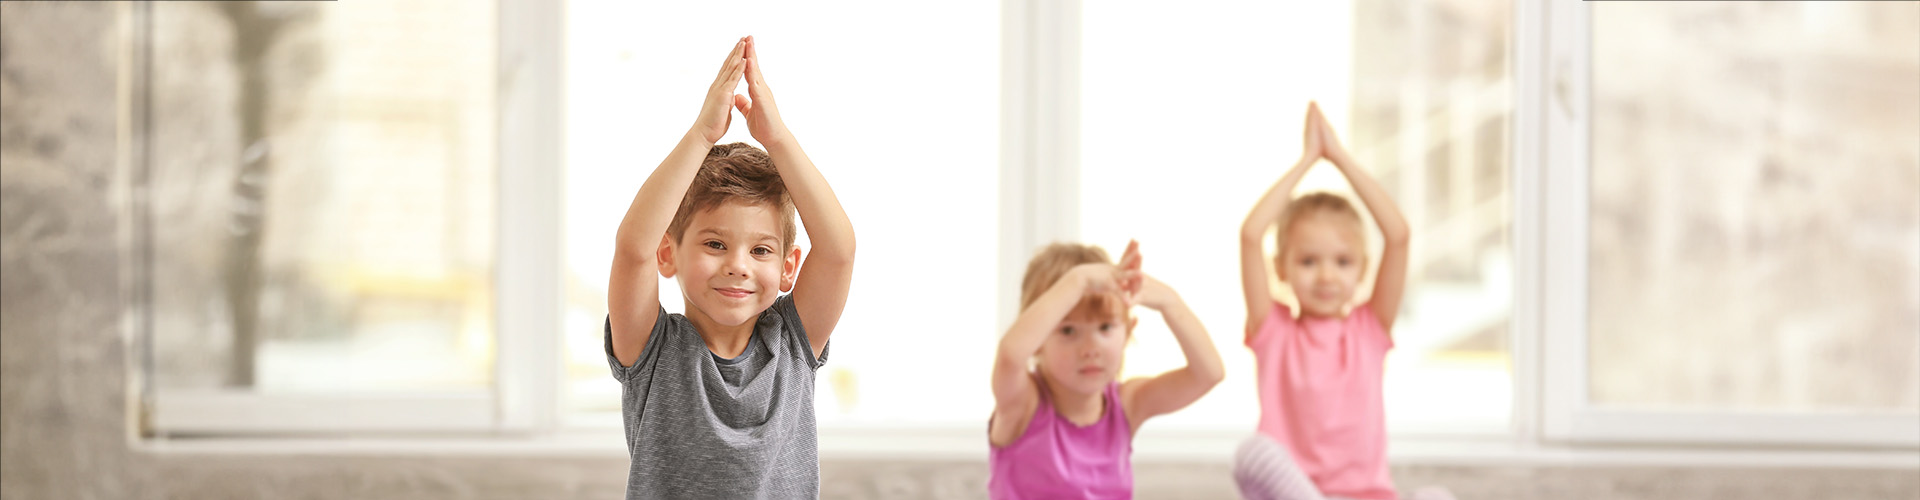 Yoga für Kids | Ausbildung zum Yoga Trainer